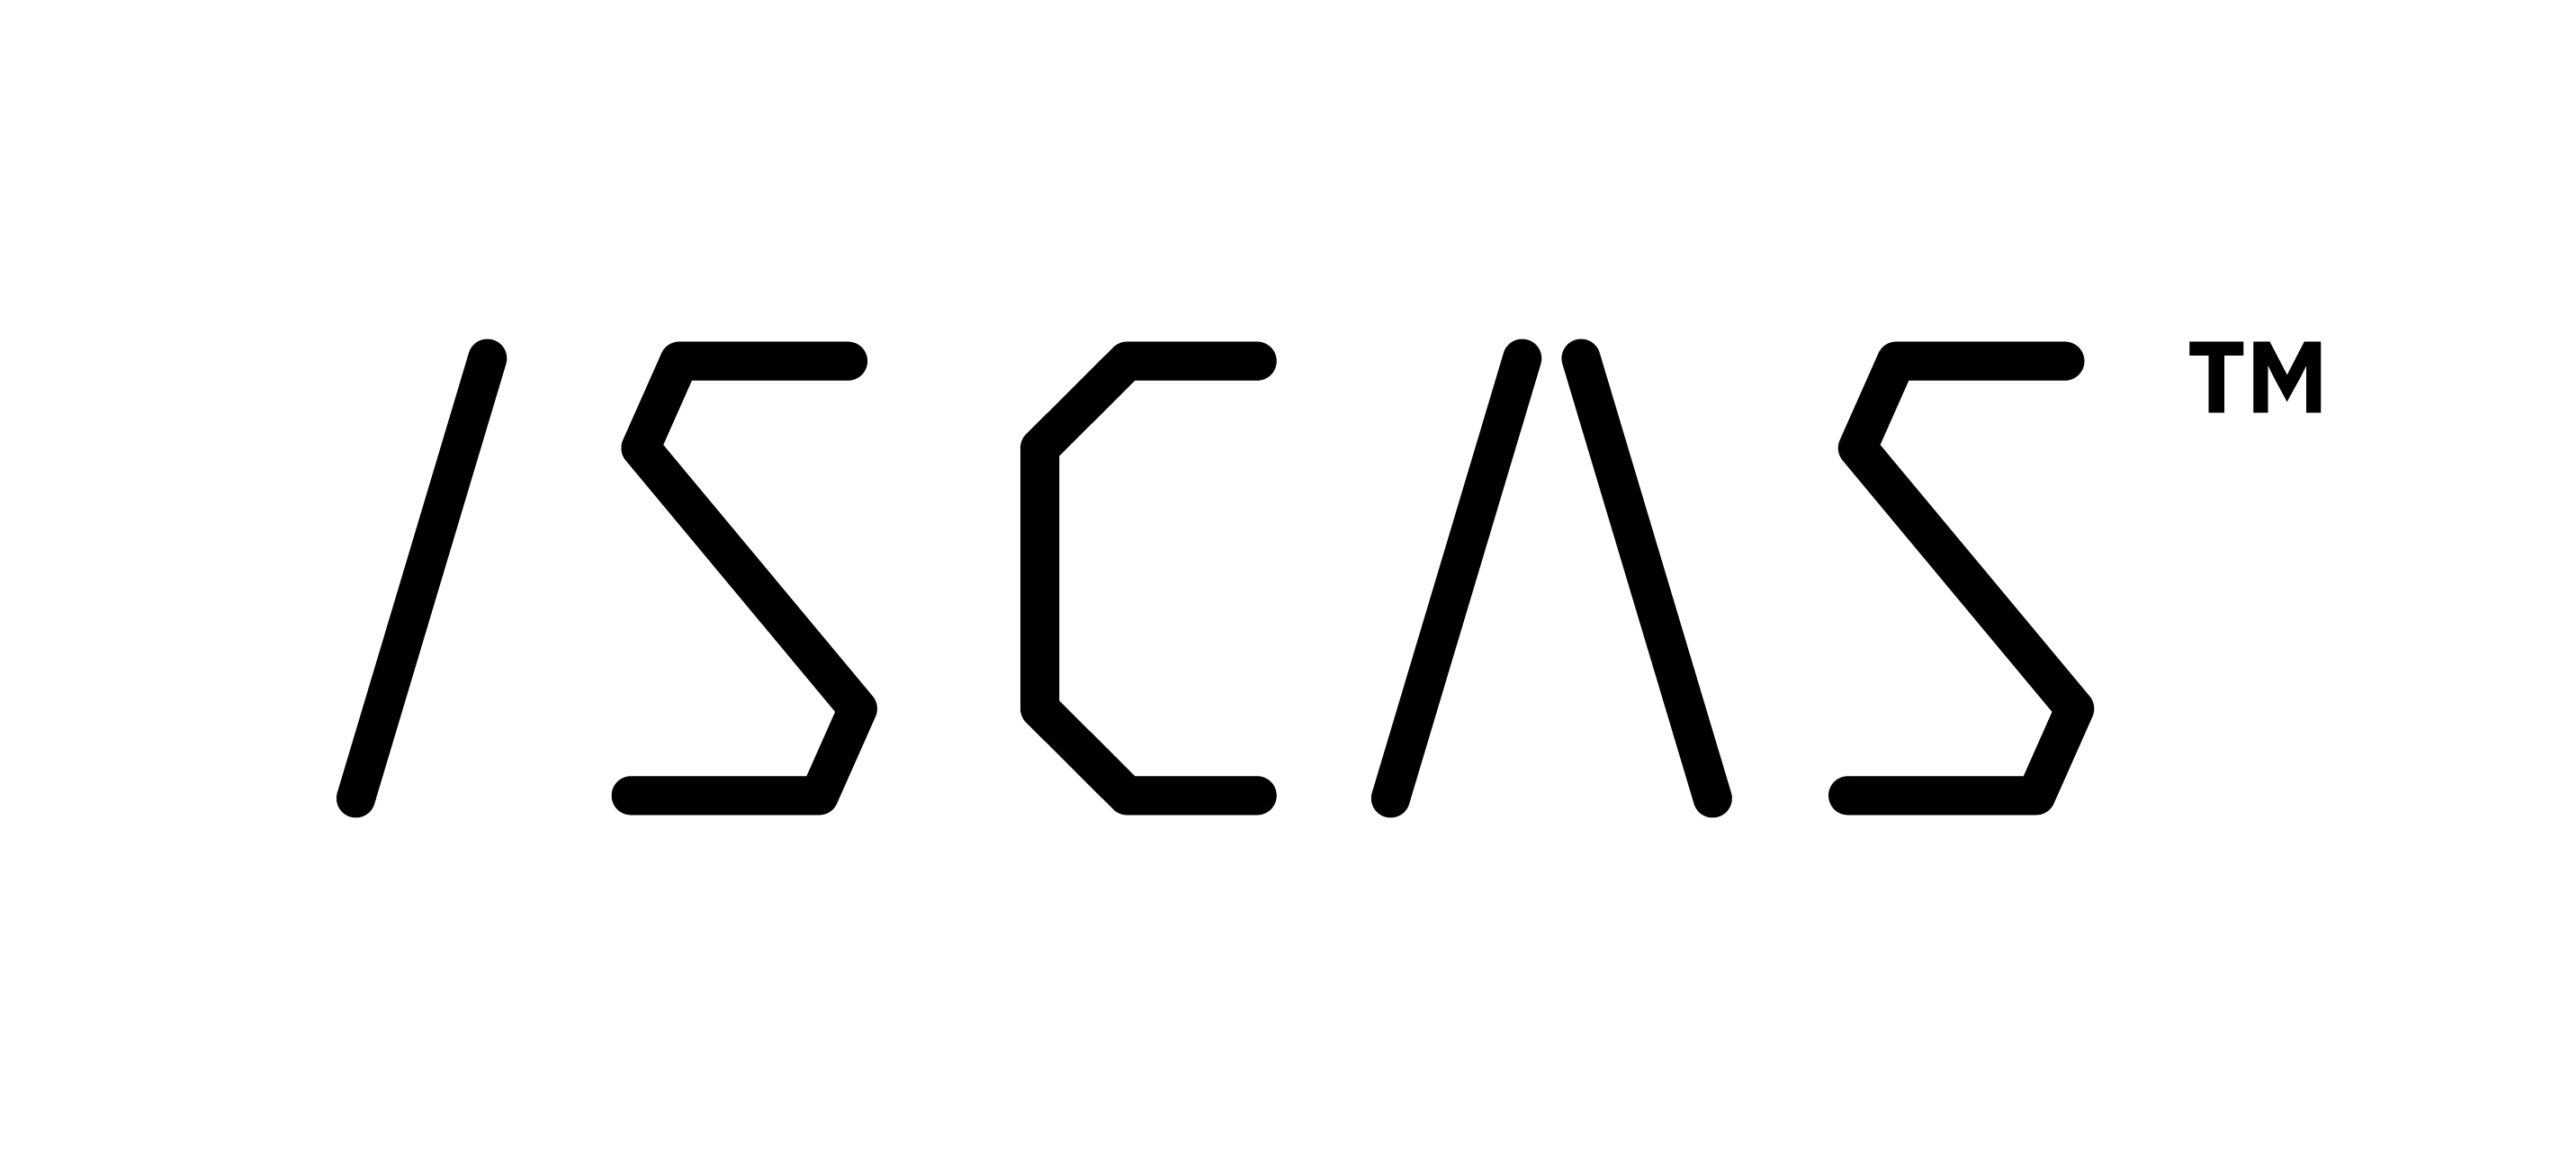 ISCAS Sp. z o.o. logo